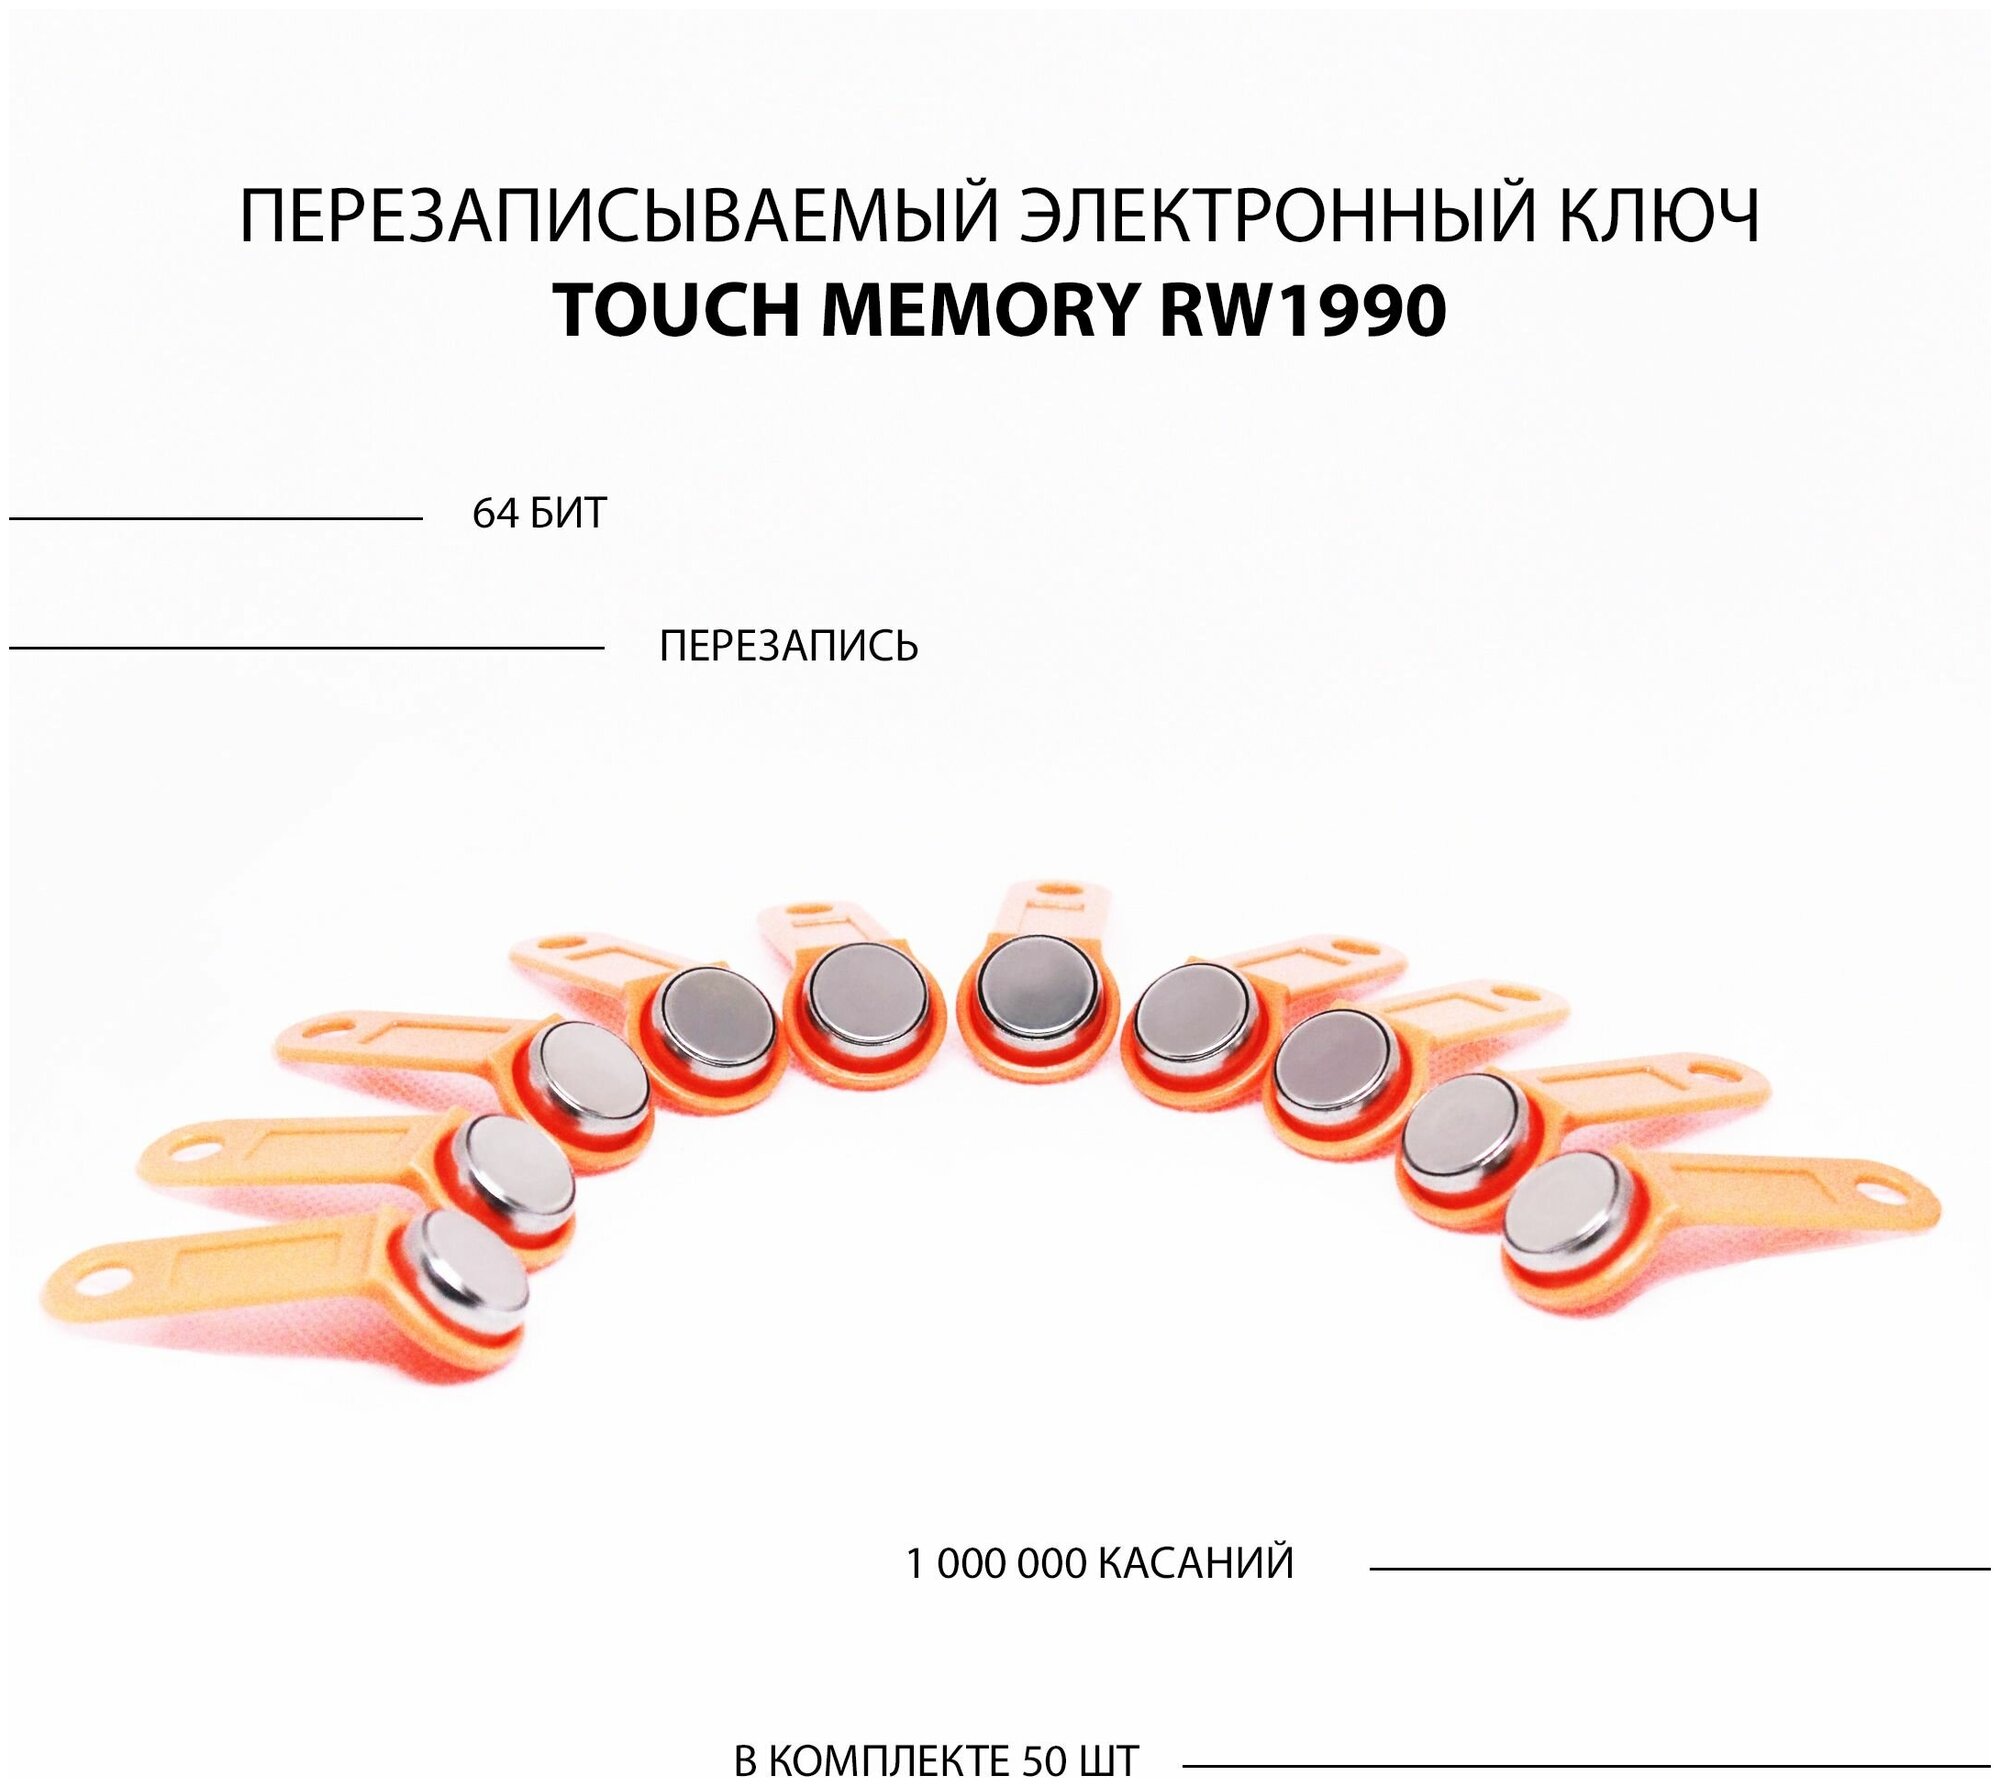 Электронный ключ для домофона RW1990 перезаписываемый ( оранжевый 50 шт ) заготовка таблетка Touch Memory для создания копий контактных ключей TM